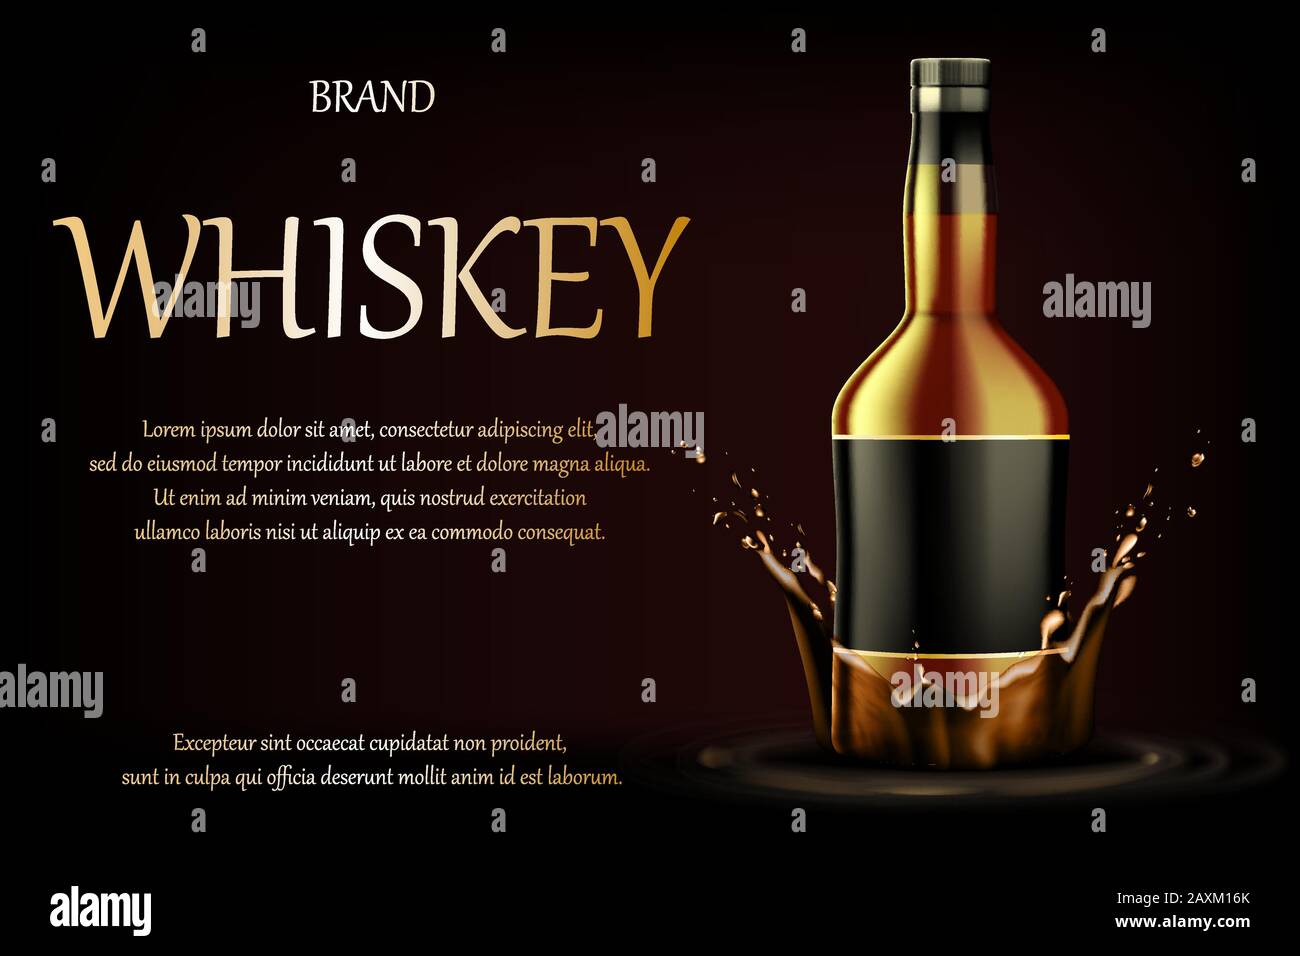 Whisky-Drink-Werbung. Realistischer Glas Whisky starke Alkoholtrinkflasche auf dunklem Hintergrund mit flüssigem Spritzer und Tropfen, Werbung für Bannerdesign Stock Vektor